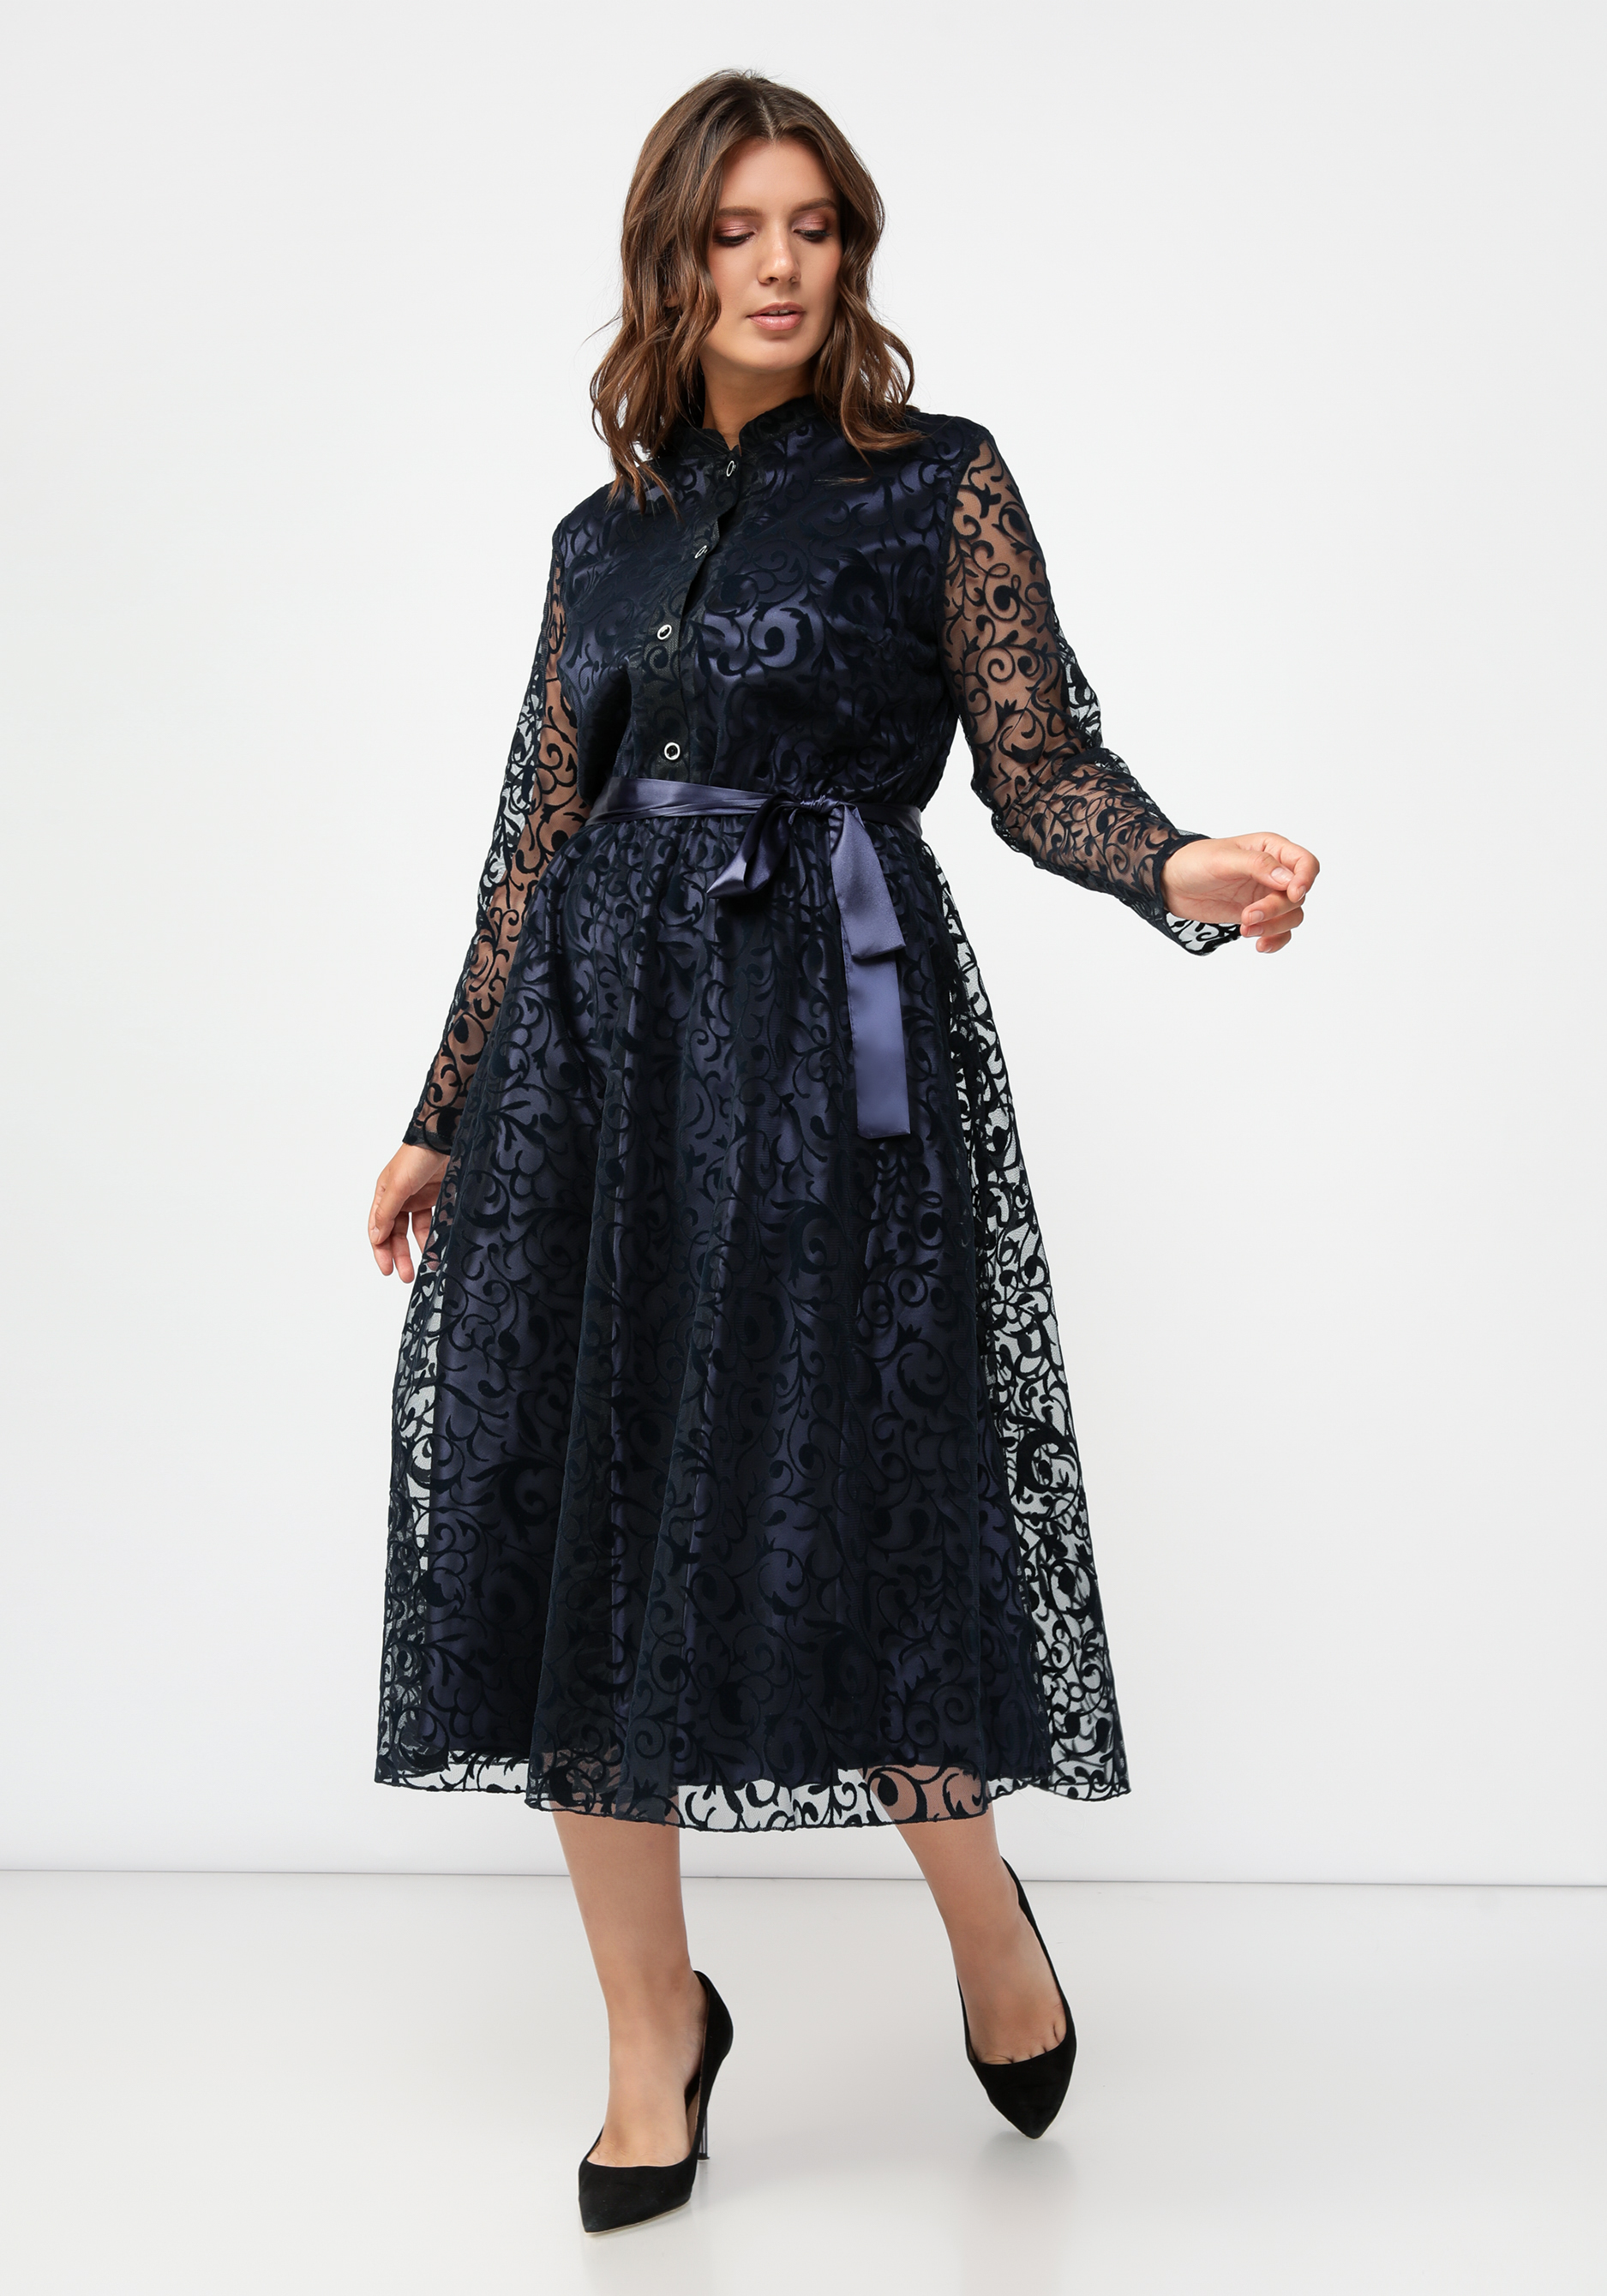 Платье из фактурной ткани Амелия цена и фото